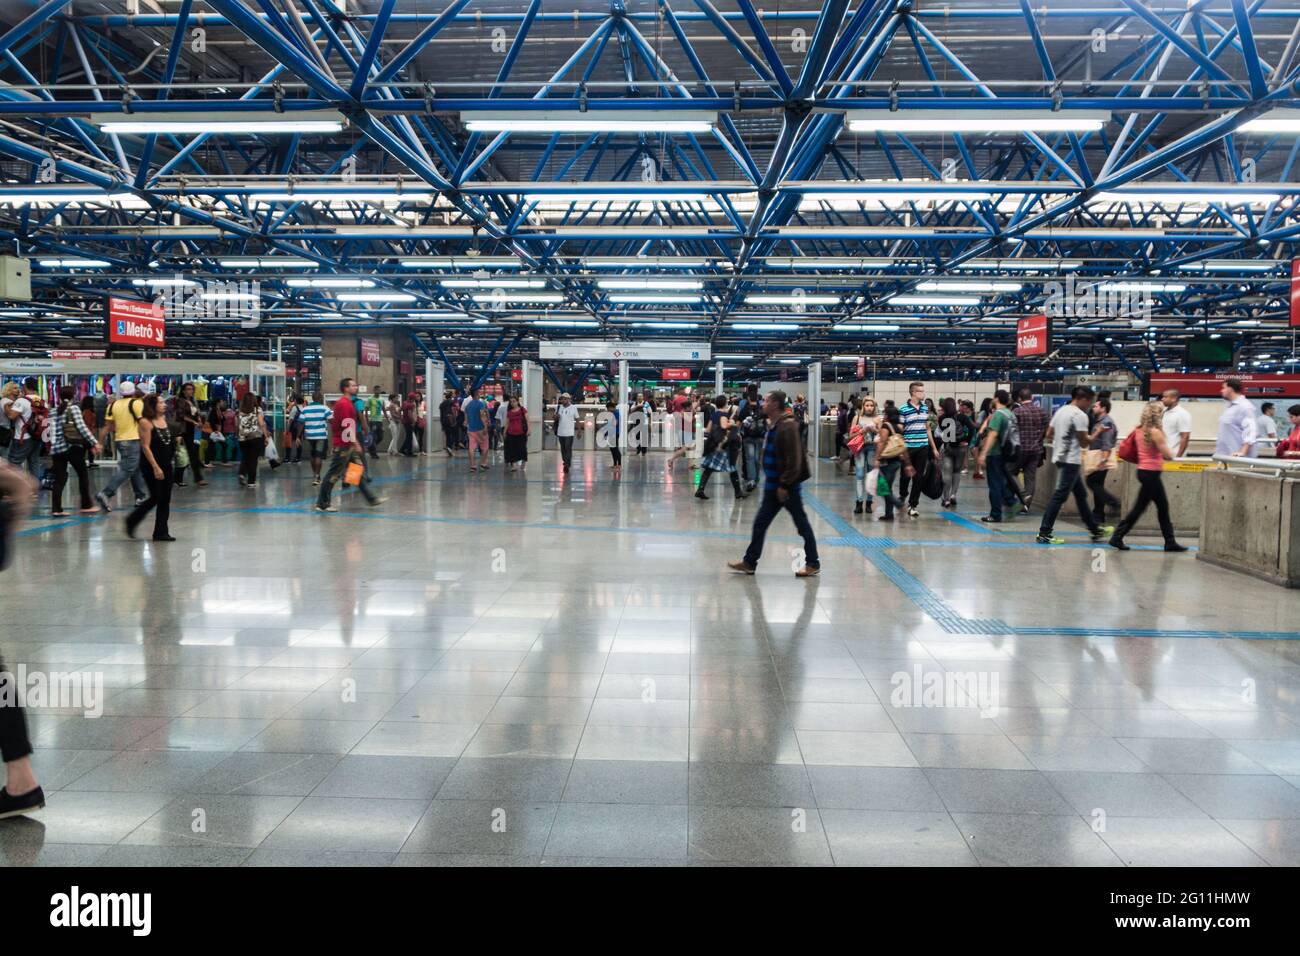 SAN PAOLO, BRASILE - 2 FEBBRAIO 2015: Interno del Terminal Rodoviario Tiete stazione degli autobus a San Paolo, Brasile Foto Stock